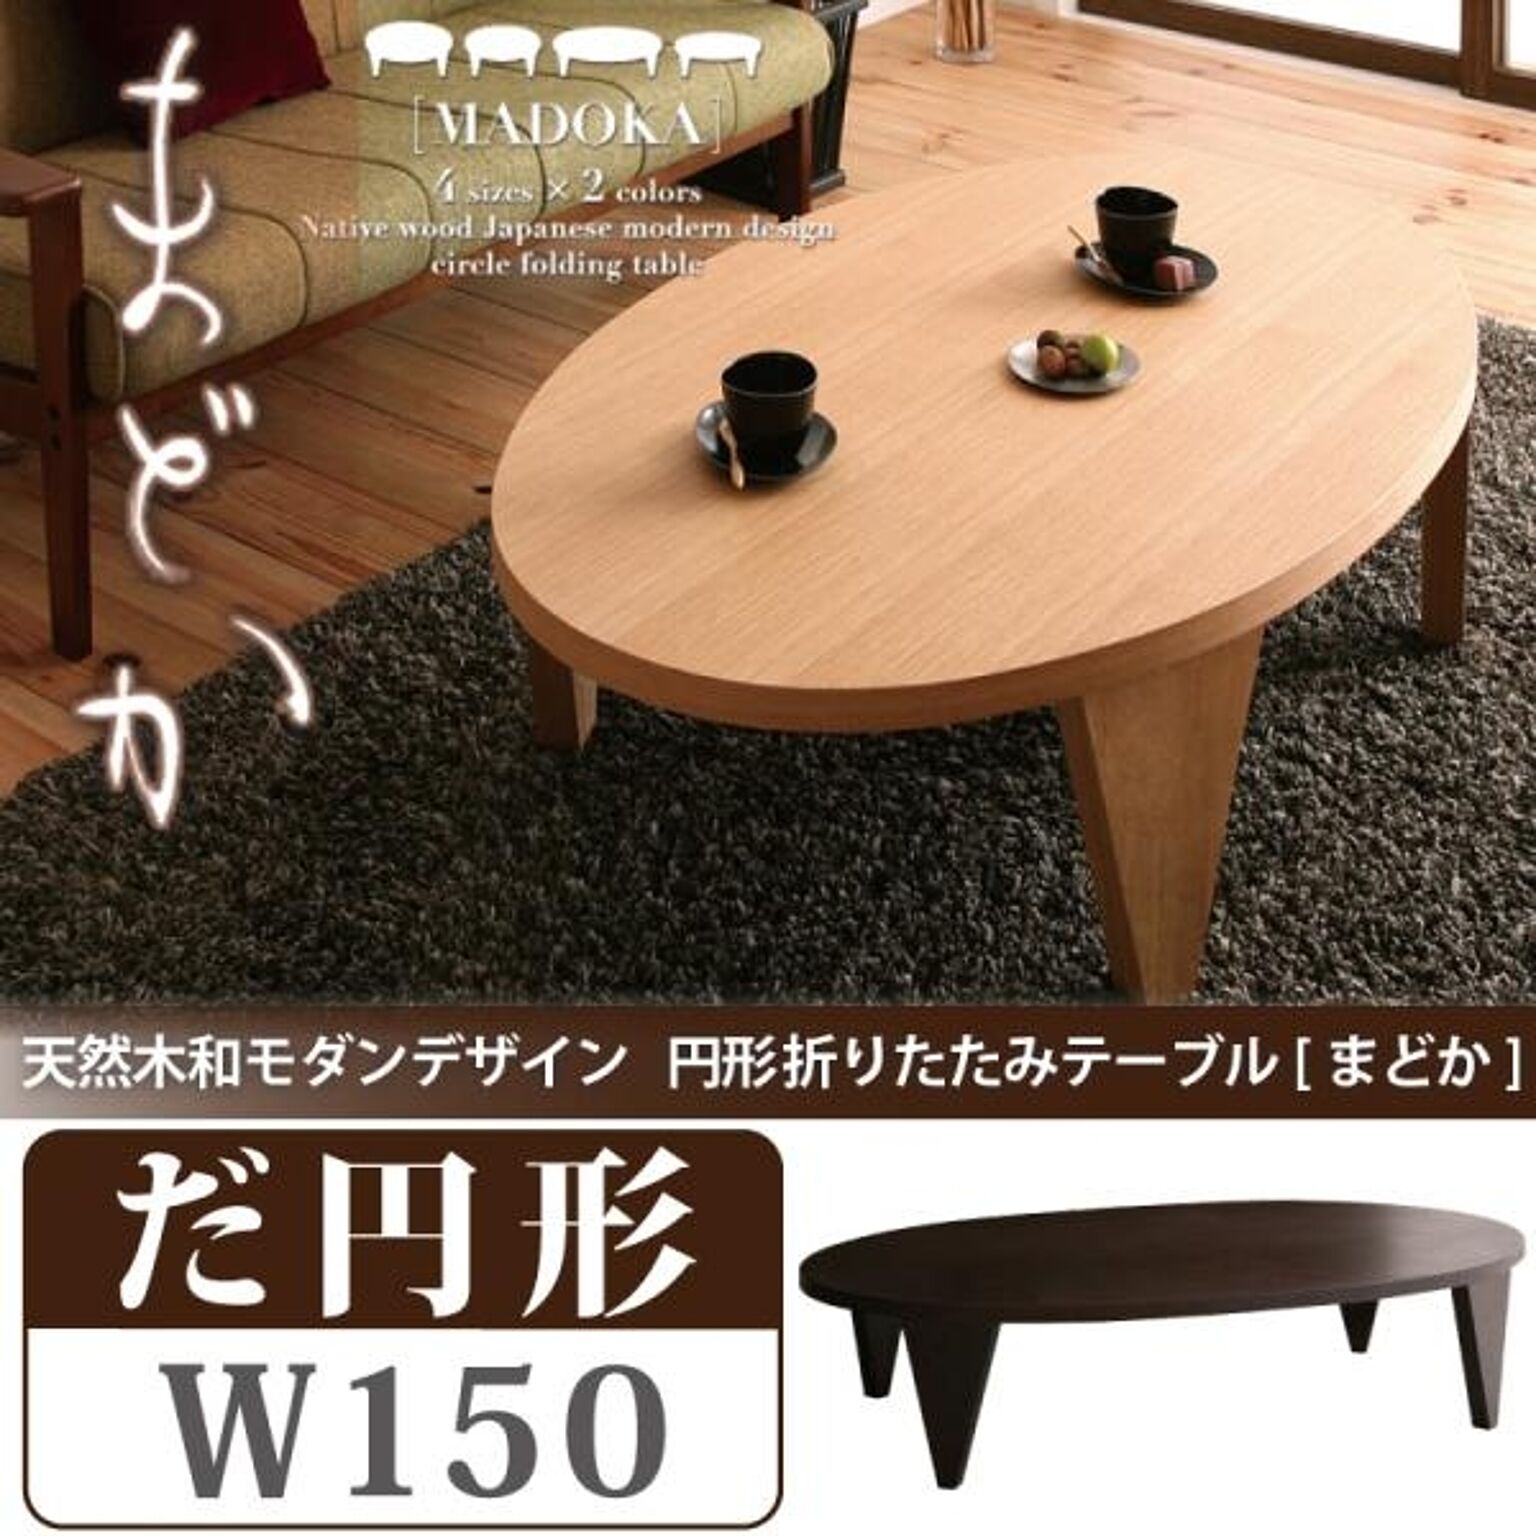 MADOKA 天然木 円形折りたたみテーブル 幅150 ナチュラル